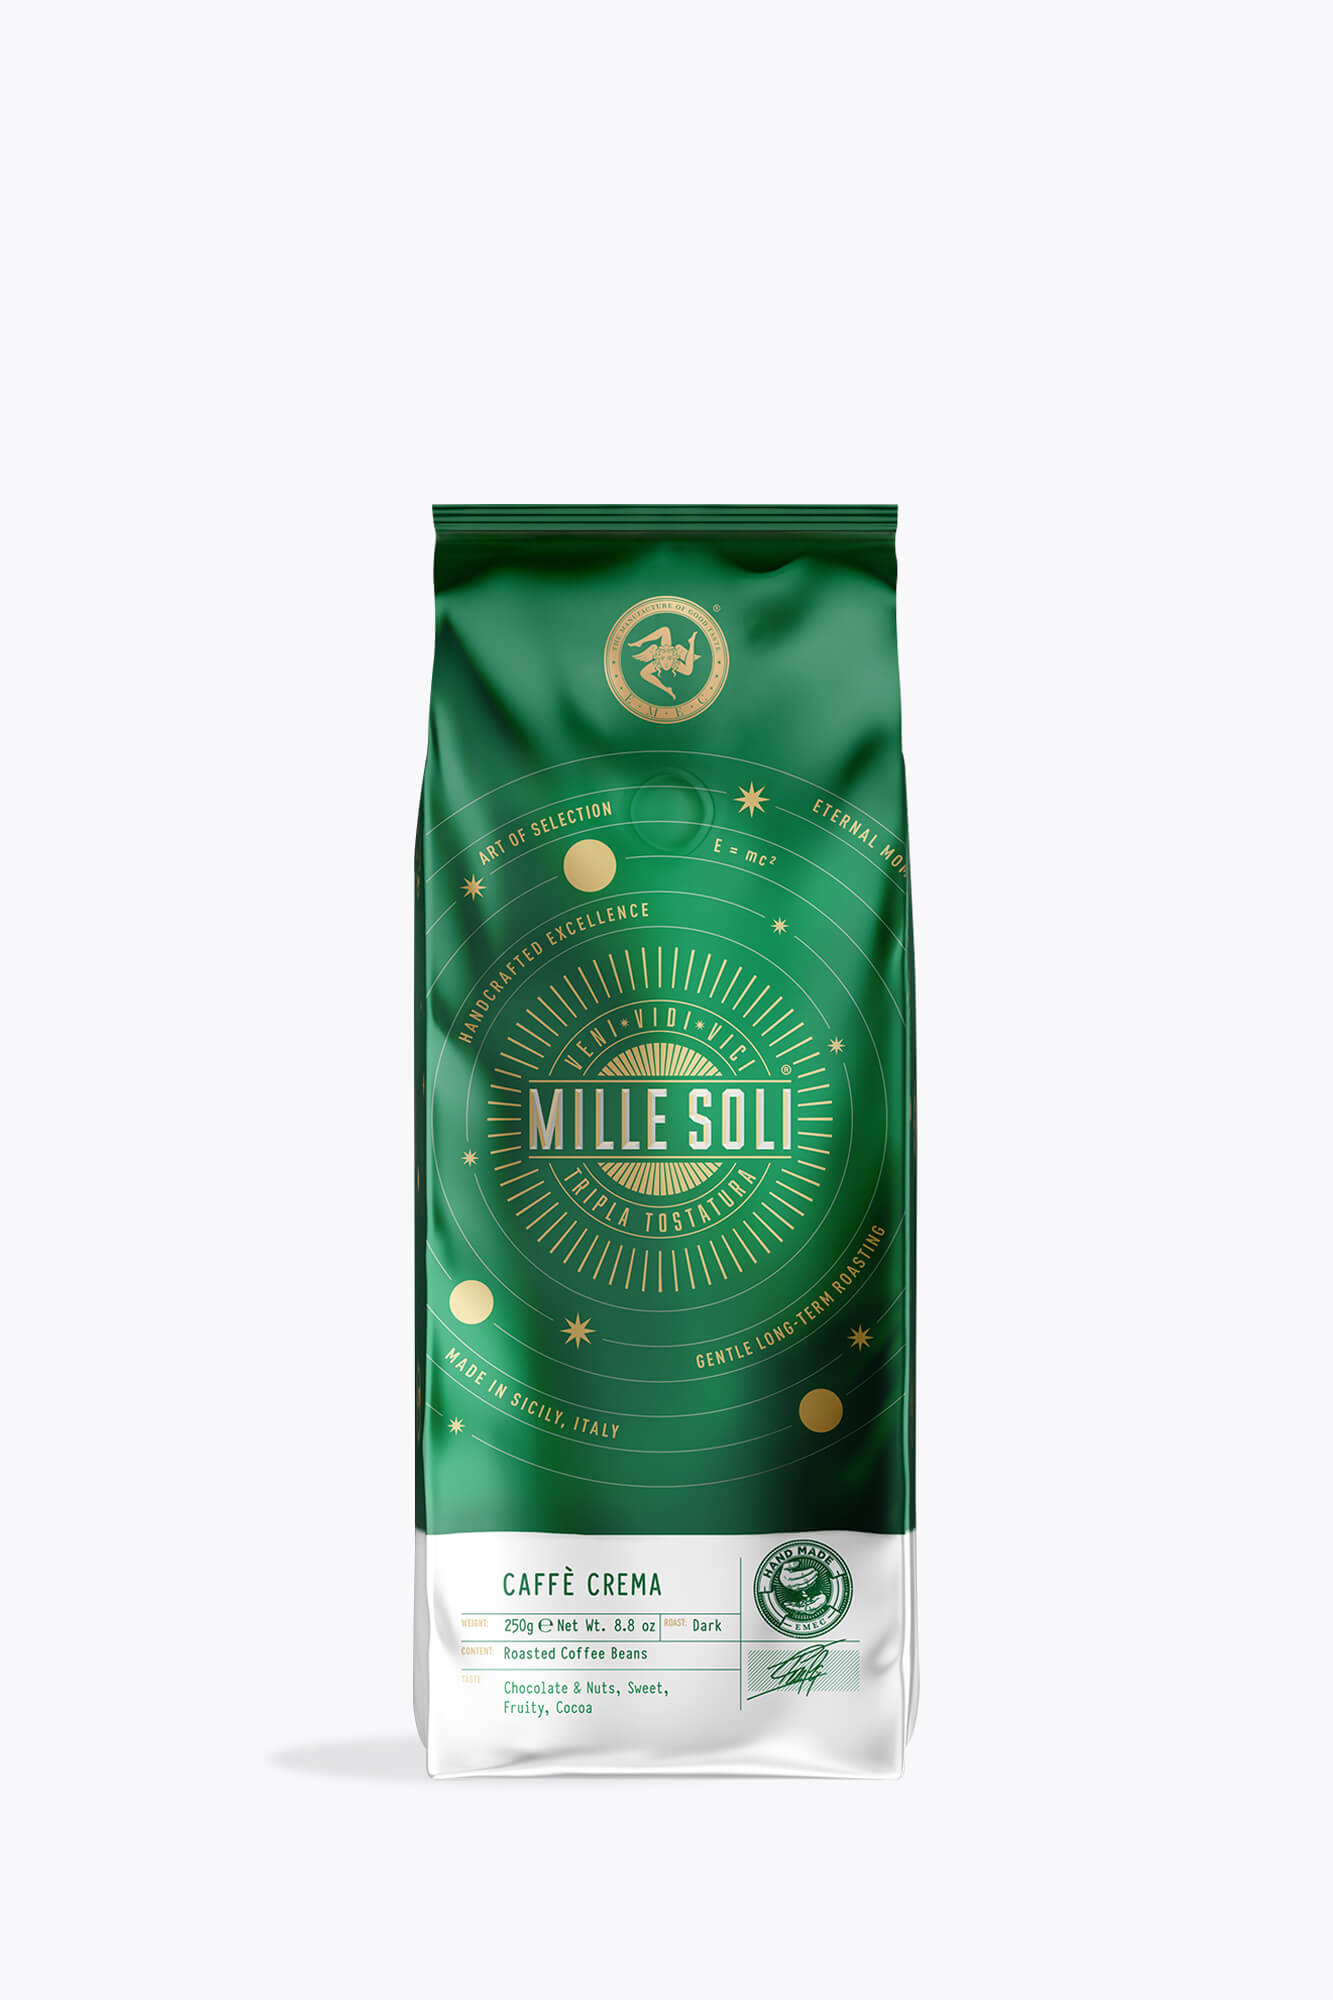 MilleSoli Mille Soli Caffè Crema 250g